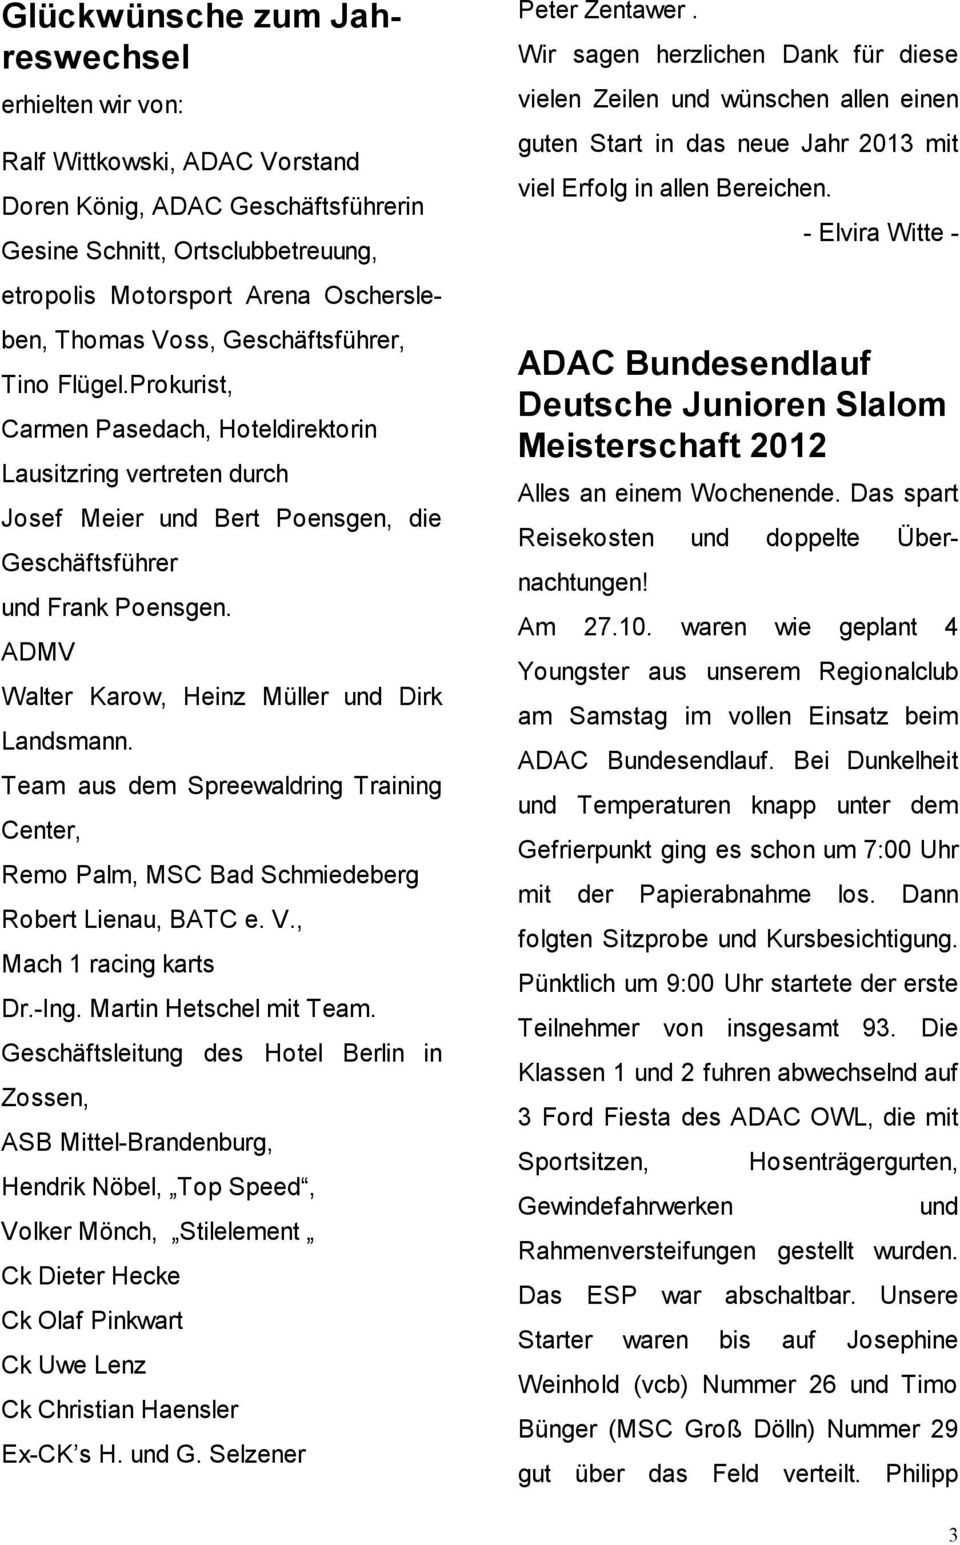 ADMV Walter Karow, Heinz Müller und Dirk Landsmann. Team aus dem Spreewaldring Training Center, Remo Palm, MSC Bad Schmiedeberg Robert Lienau, BATC e. V., Mach 1 racing karts Dr.-Ing.